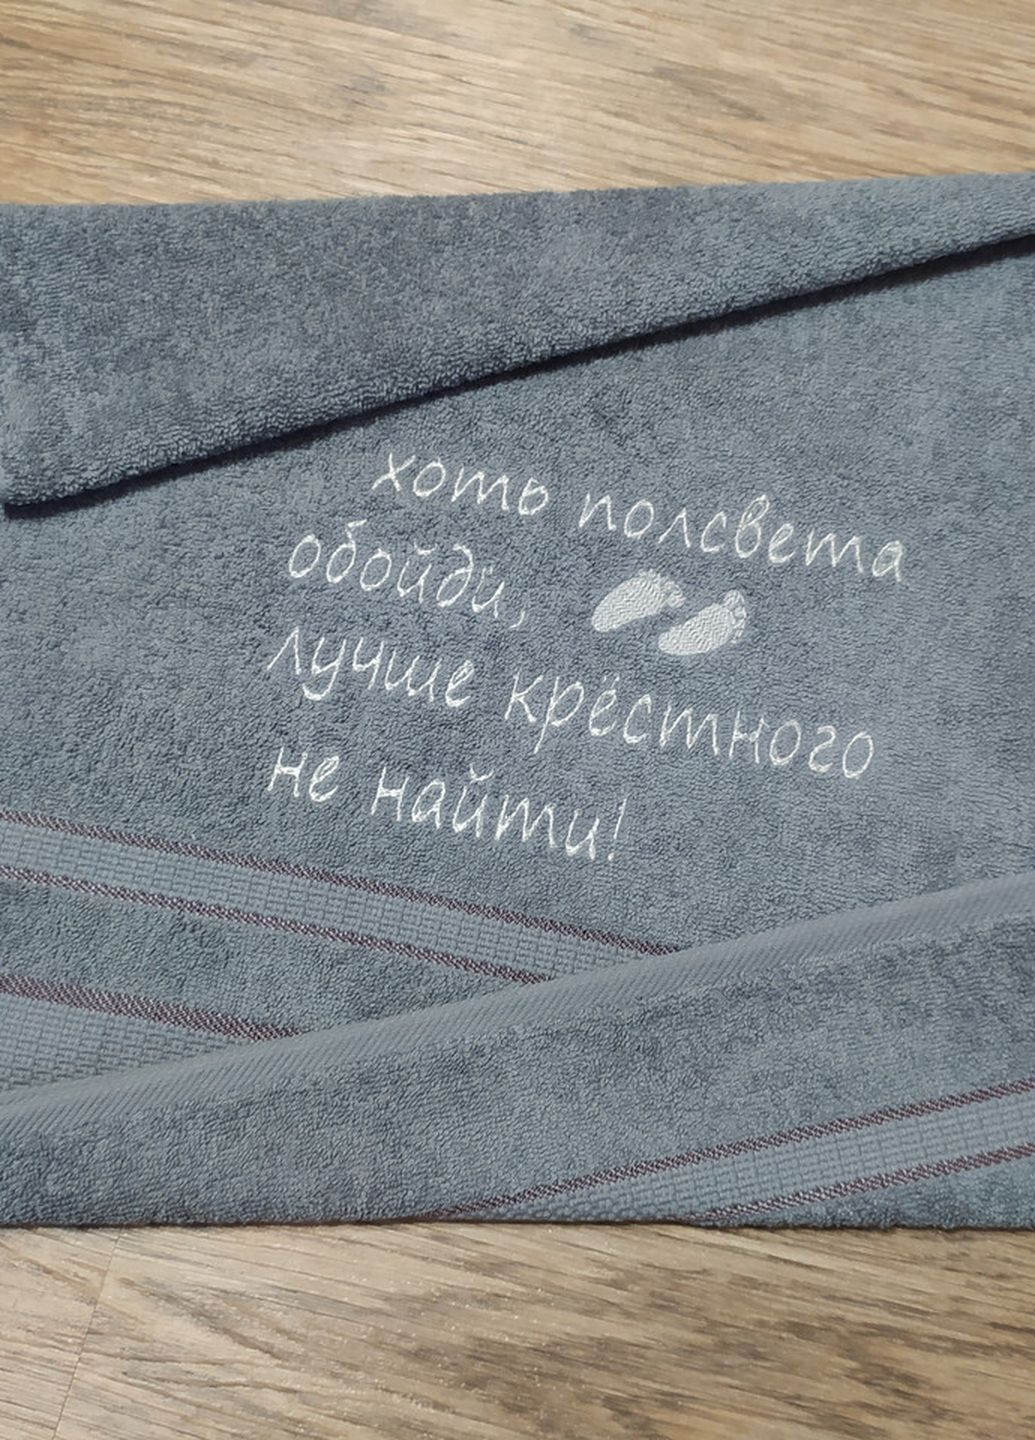 No Brand полотенце с вышивкой махровое лицевое 50*90 серый крестному папе куму 00093 однотонный серый производство - Украина